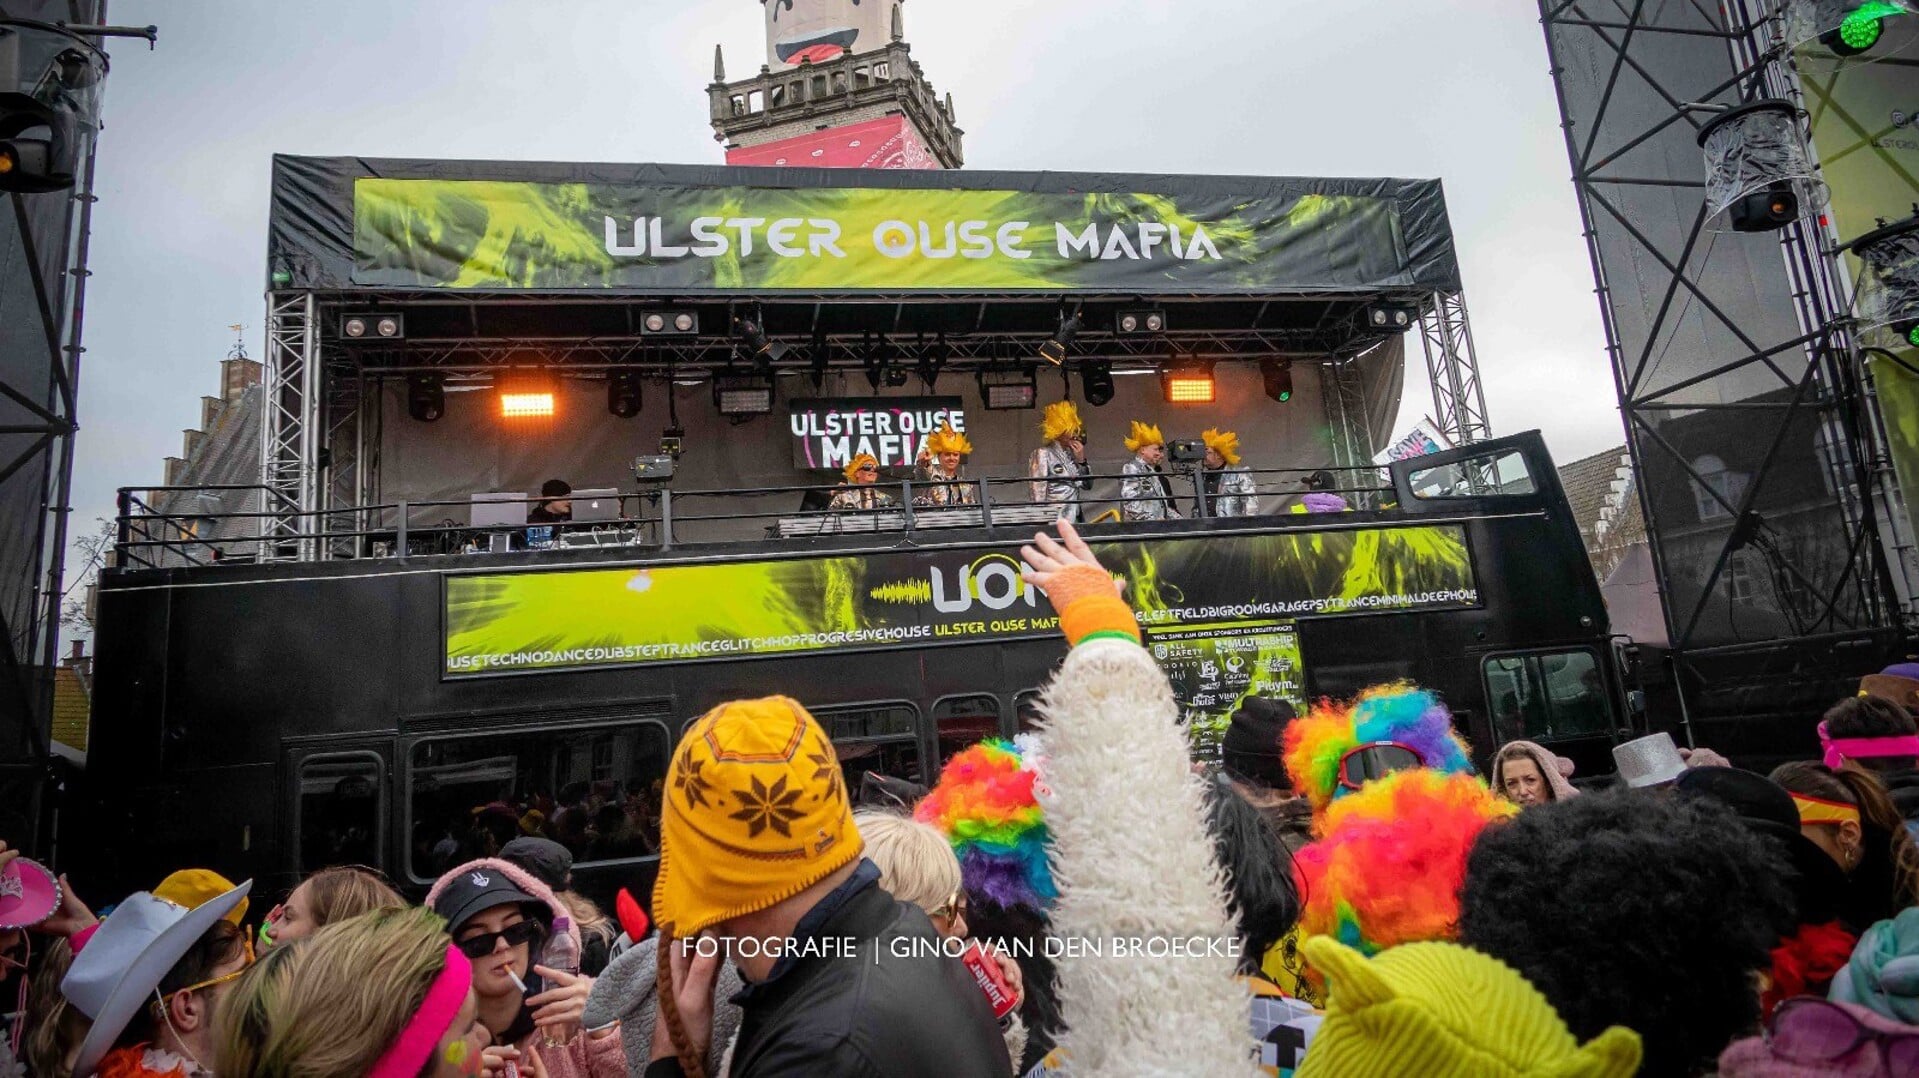 De Ulster Ouse Mafia. Carnaval 3.0, op de markt in Hulst! Met telkens een iets groter feest en met steeds meer licht, geluid en jonge mensen. 